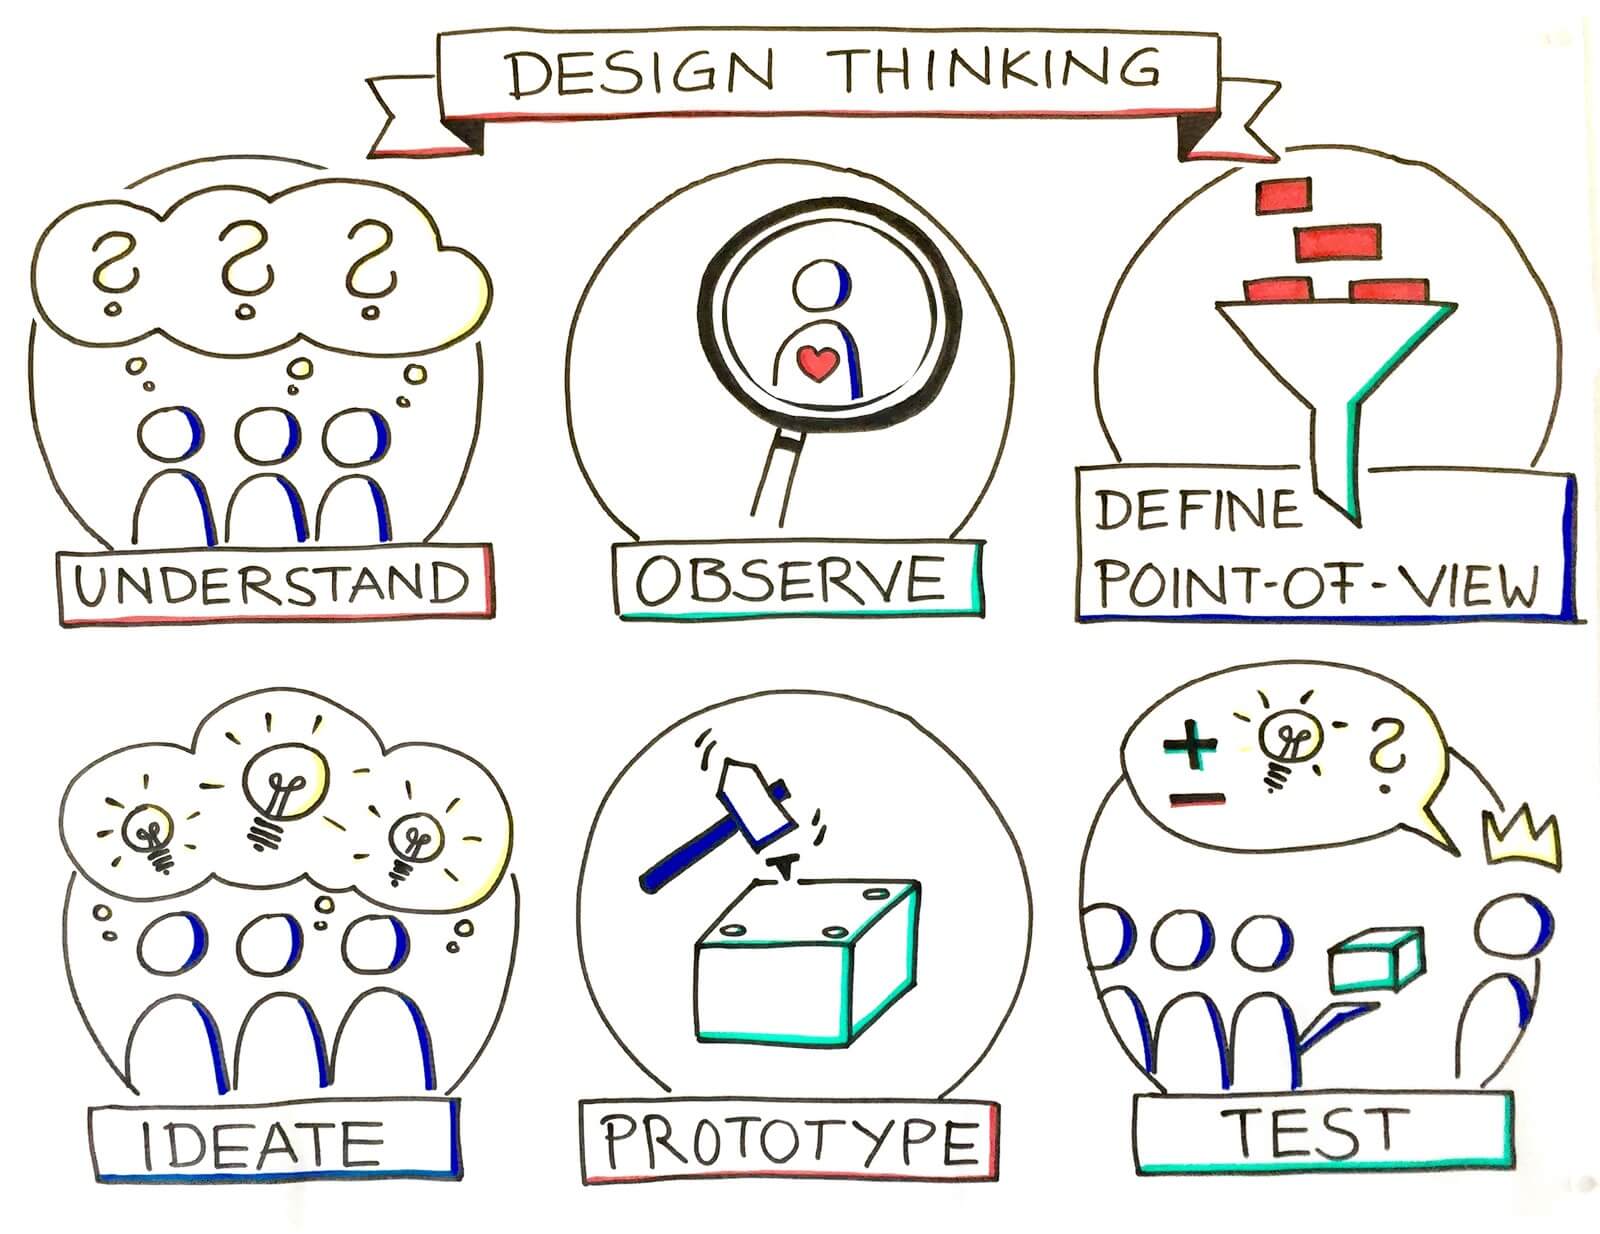 Design definition. Define Design thinking. Технология дизайн мышления. Design thinking Definitions. Point of view in Design thinking.